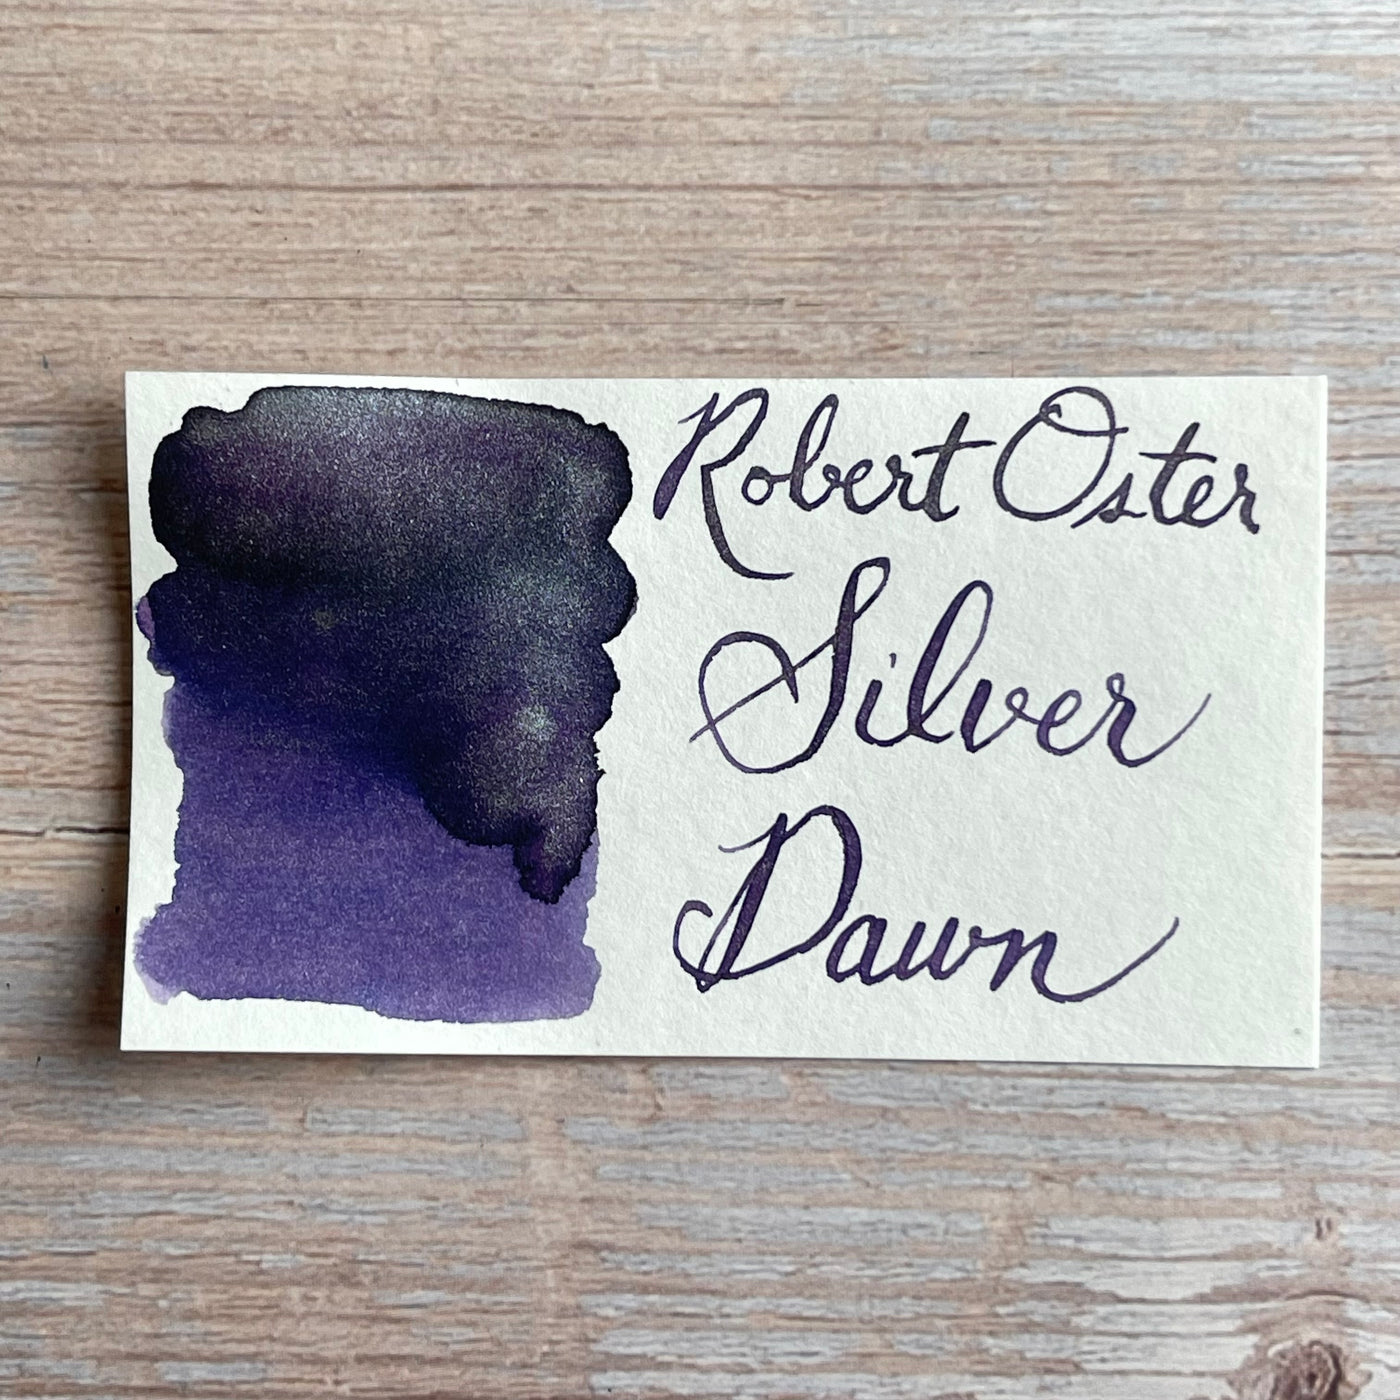 Robert Oster Silver Dawn - 50ml Bottled Ink